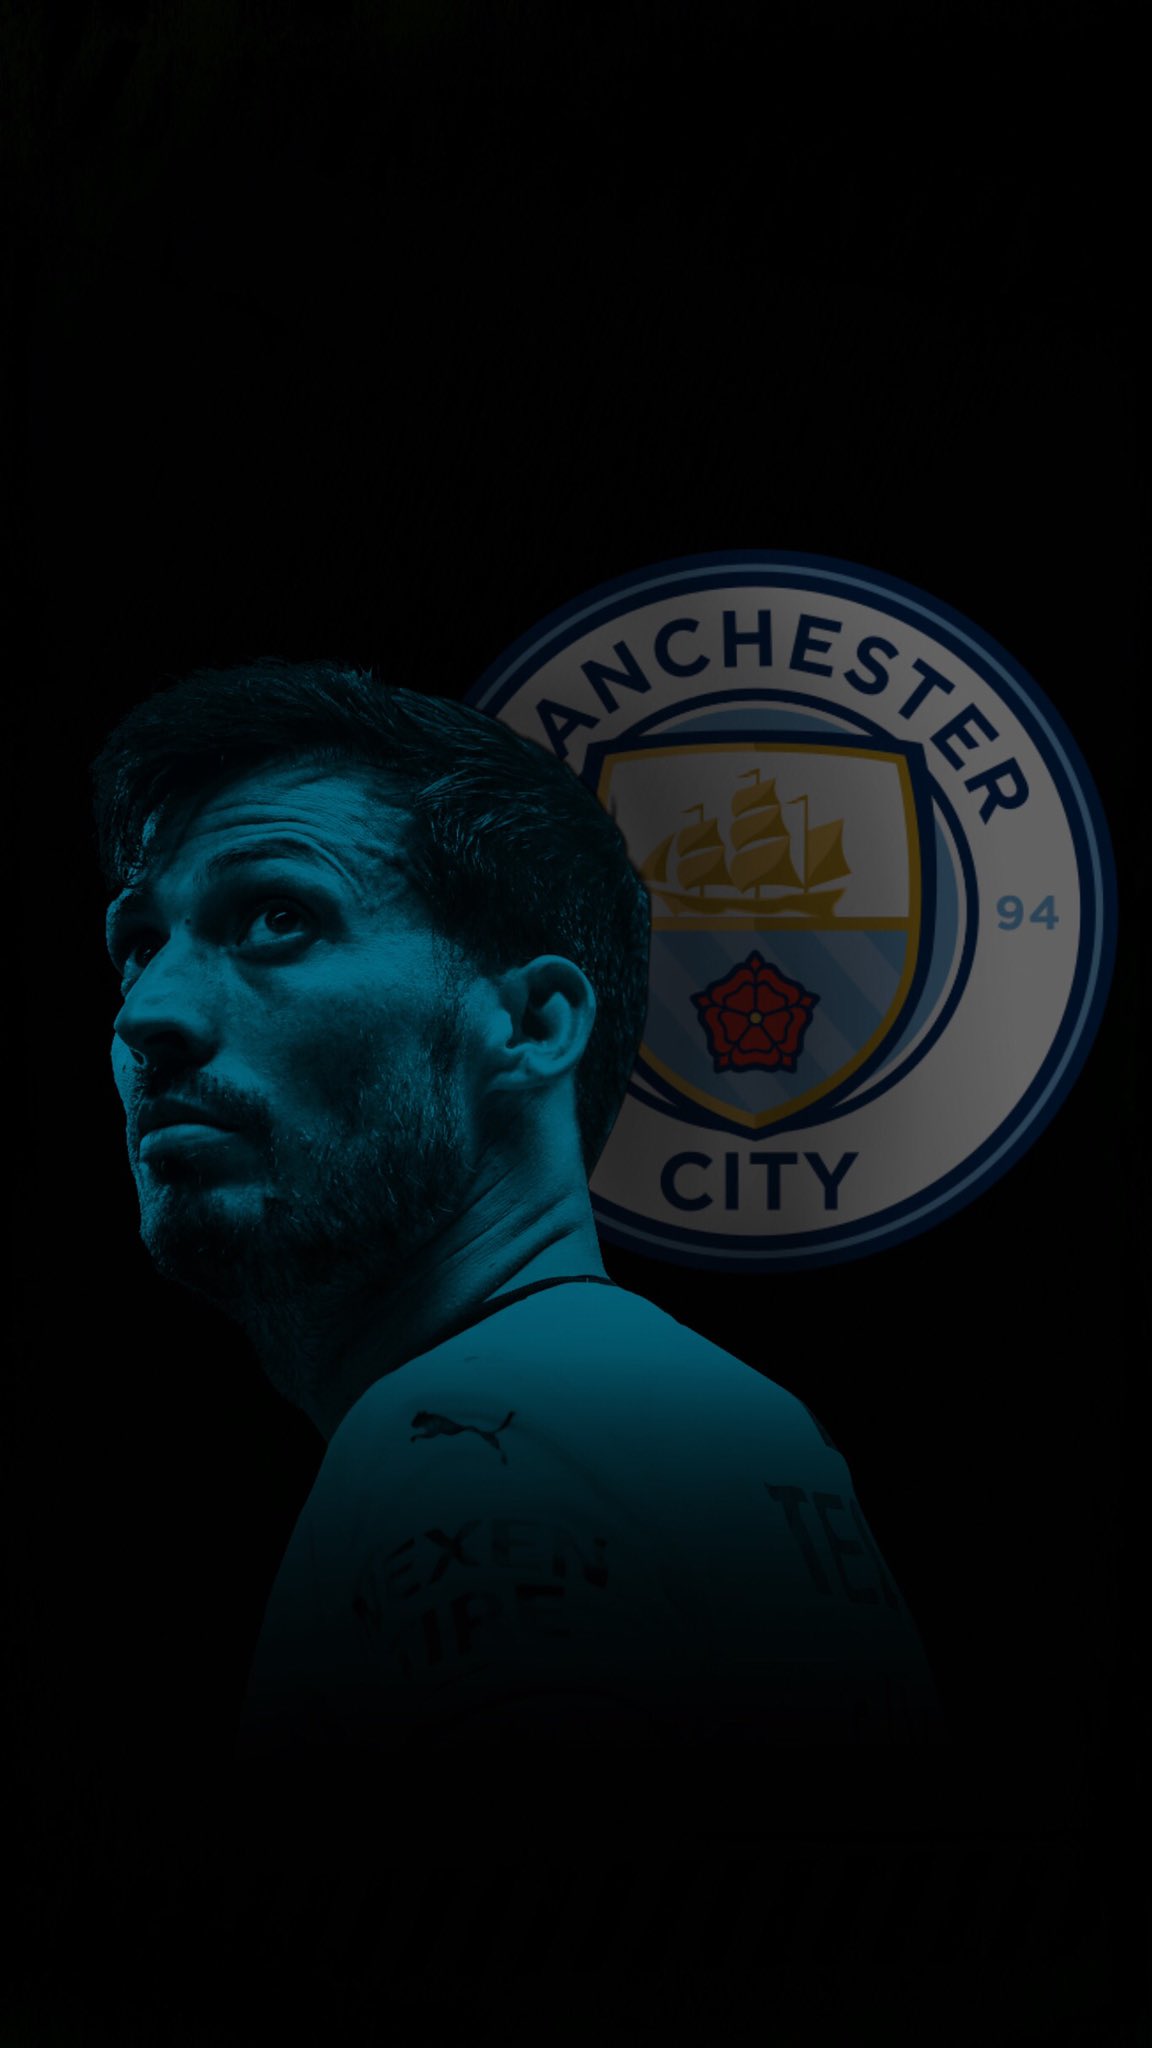 Yoshi Twitter પર Manchester City アグエロ ダビド シルバ 保存の際は リツイート お願いします サッカー壁紙 Manchestercity マンチェスターシティ アグエロ ダビドシルバ T Co Z7wofka8k0 Twitter